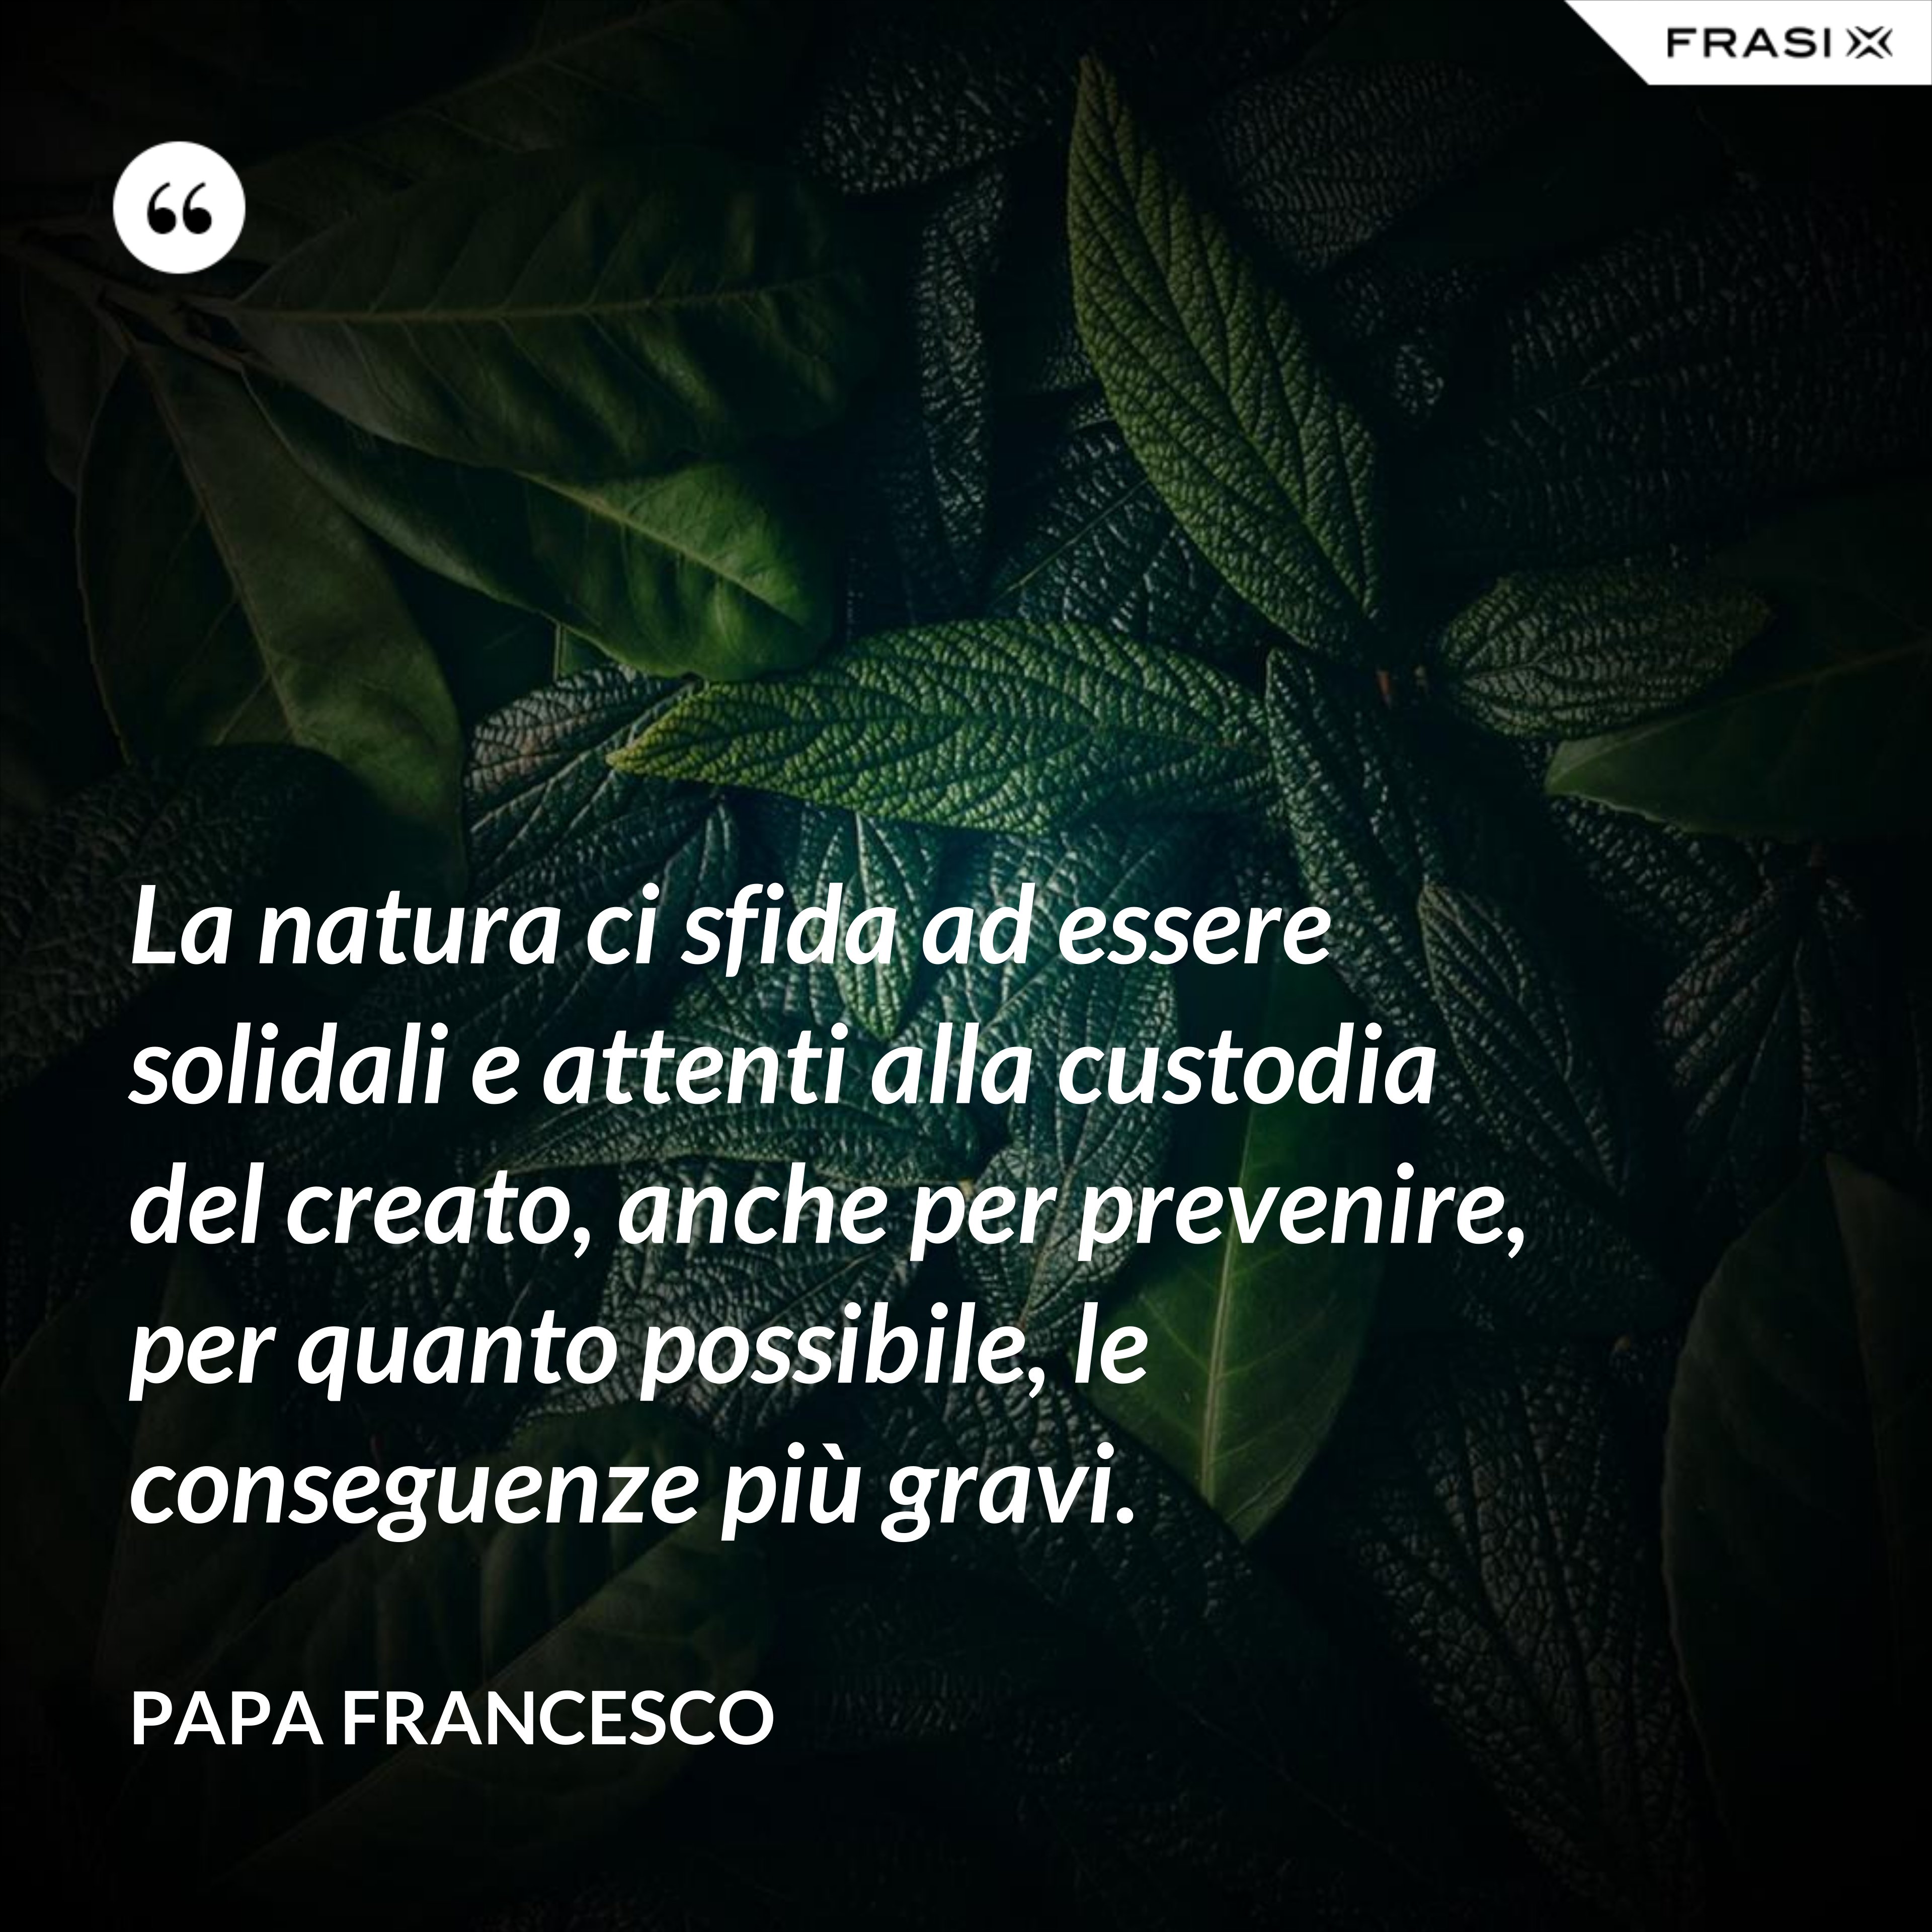 La natura ci sfida ad essere solidali e attenti alla custodia del creato, anche per prevenire, per quanto possibile, le conseguenze più gravi. - Papa Francesco